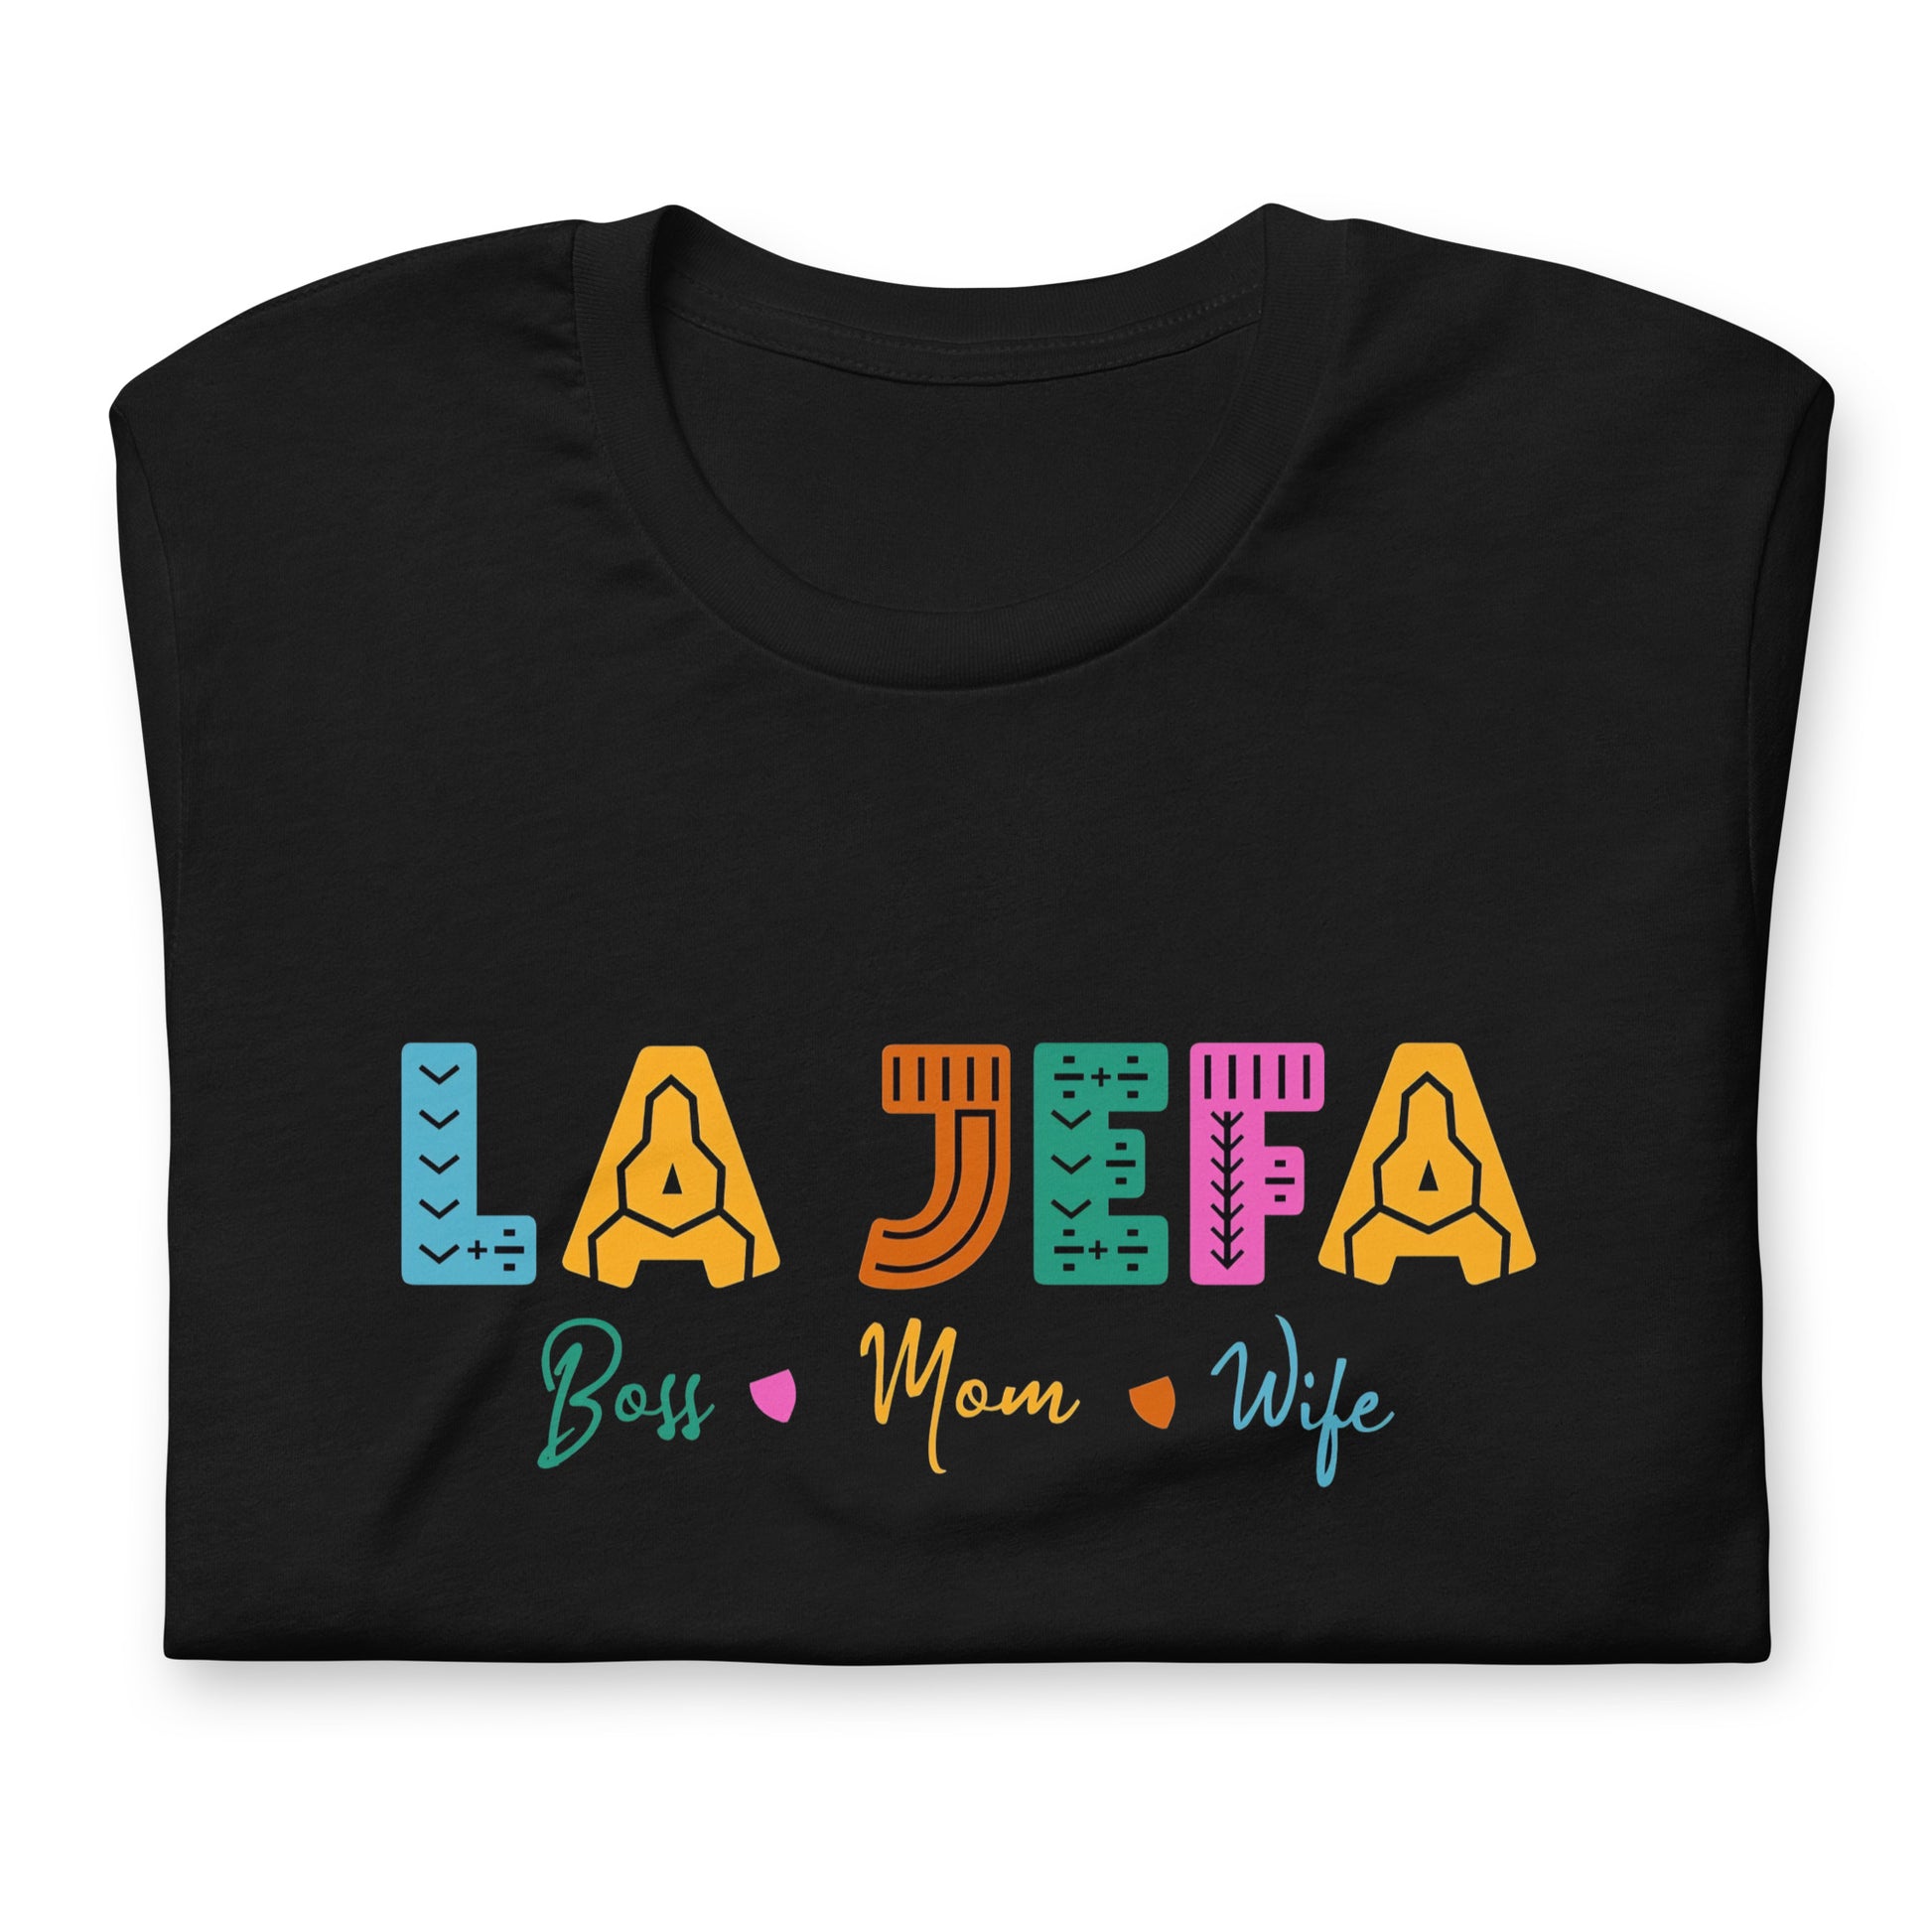 Playera de La Jefa ,Descubre calidad excepcional y estampados duraderos. Encuentra estilo y orgullo en cada prenda.